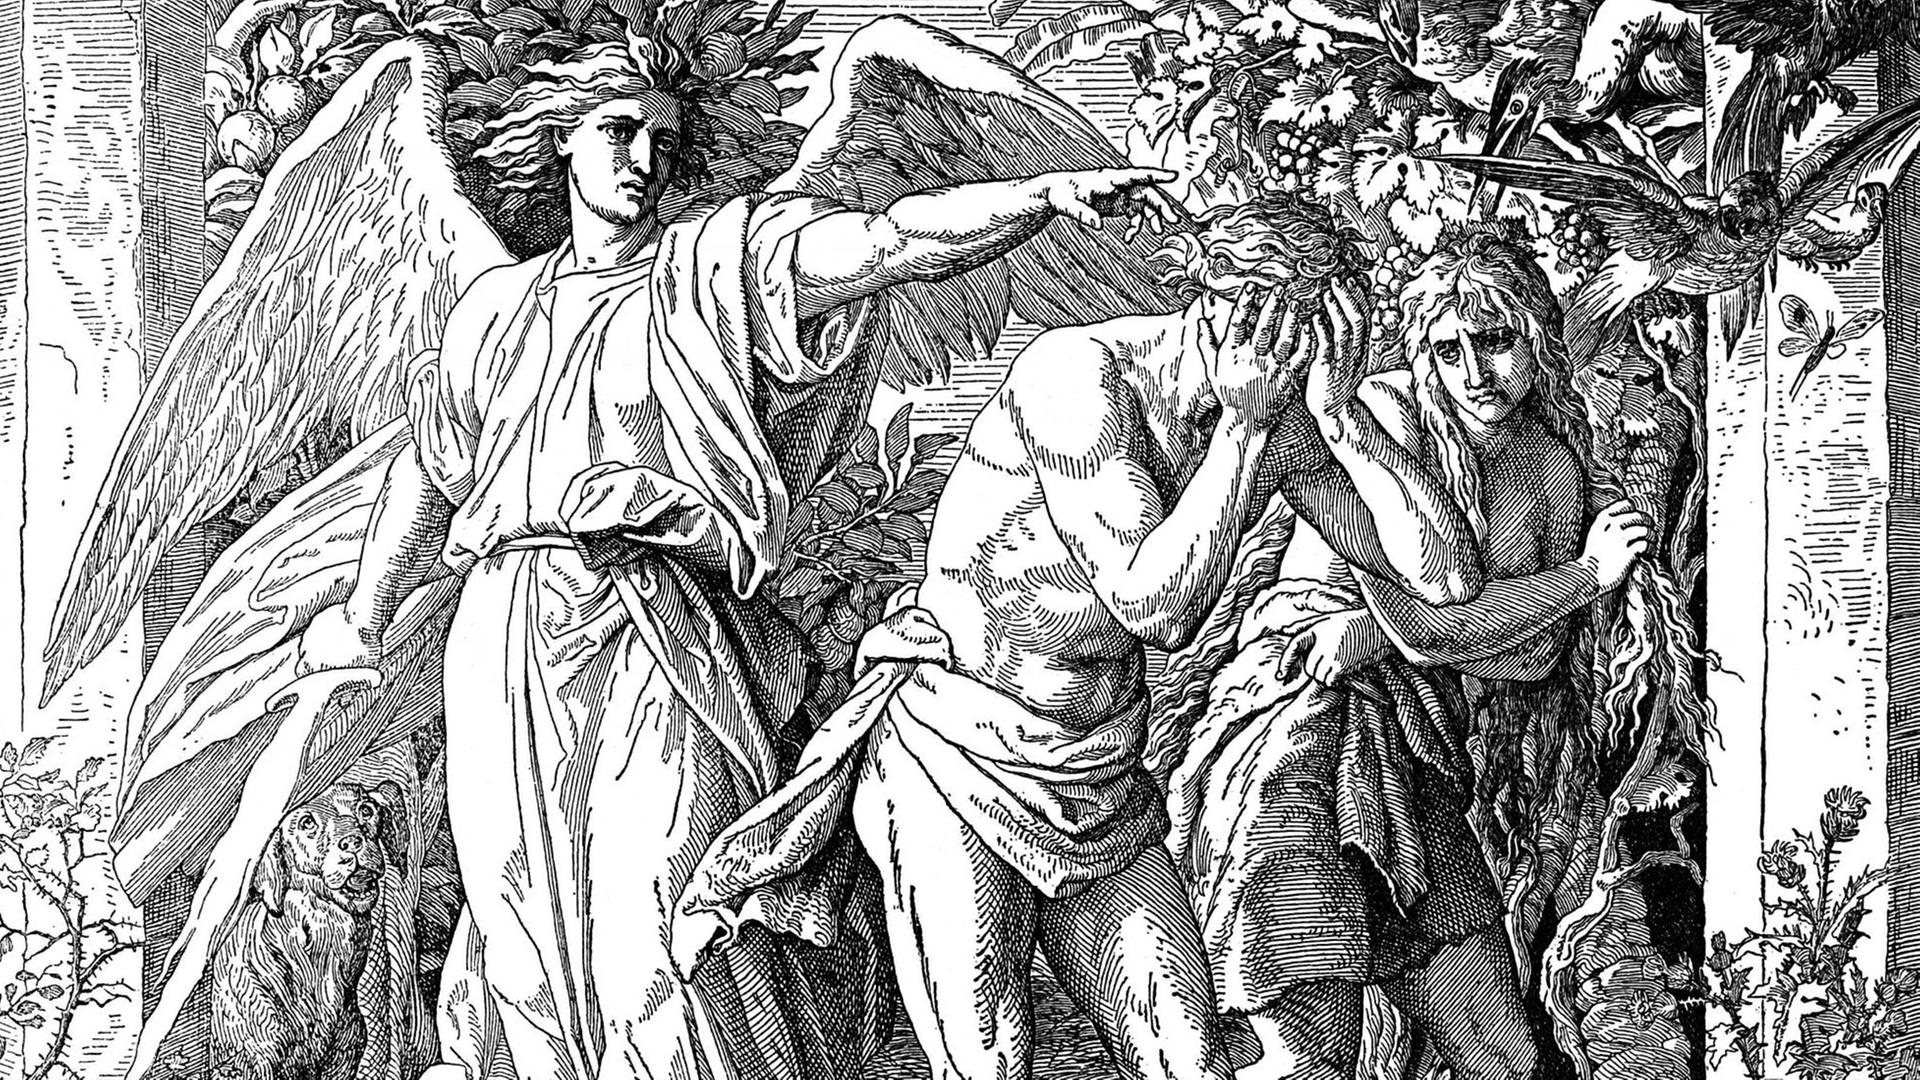 Adam und Eva: Die Vertreibung aus dem Paradies und Cherub mit Flammenschwert. Holzschnitt aus einer katholischen Bibel.